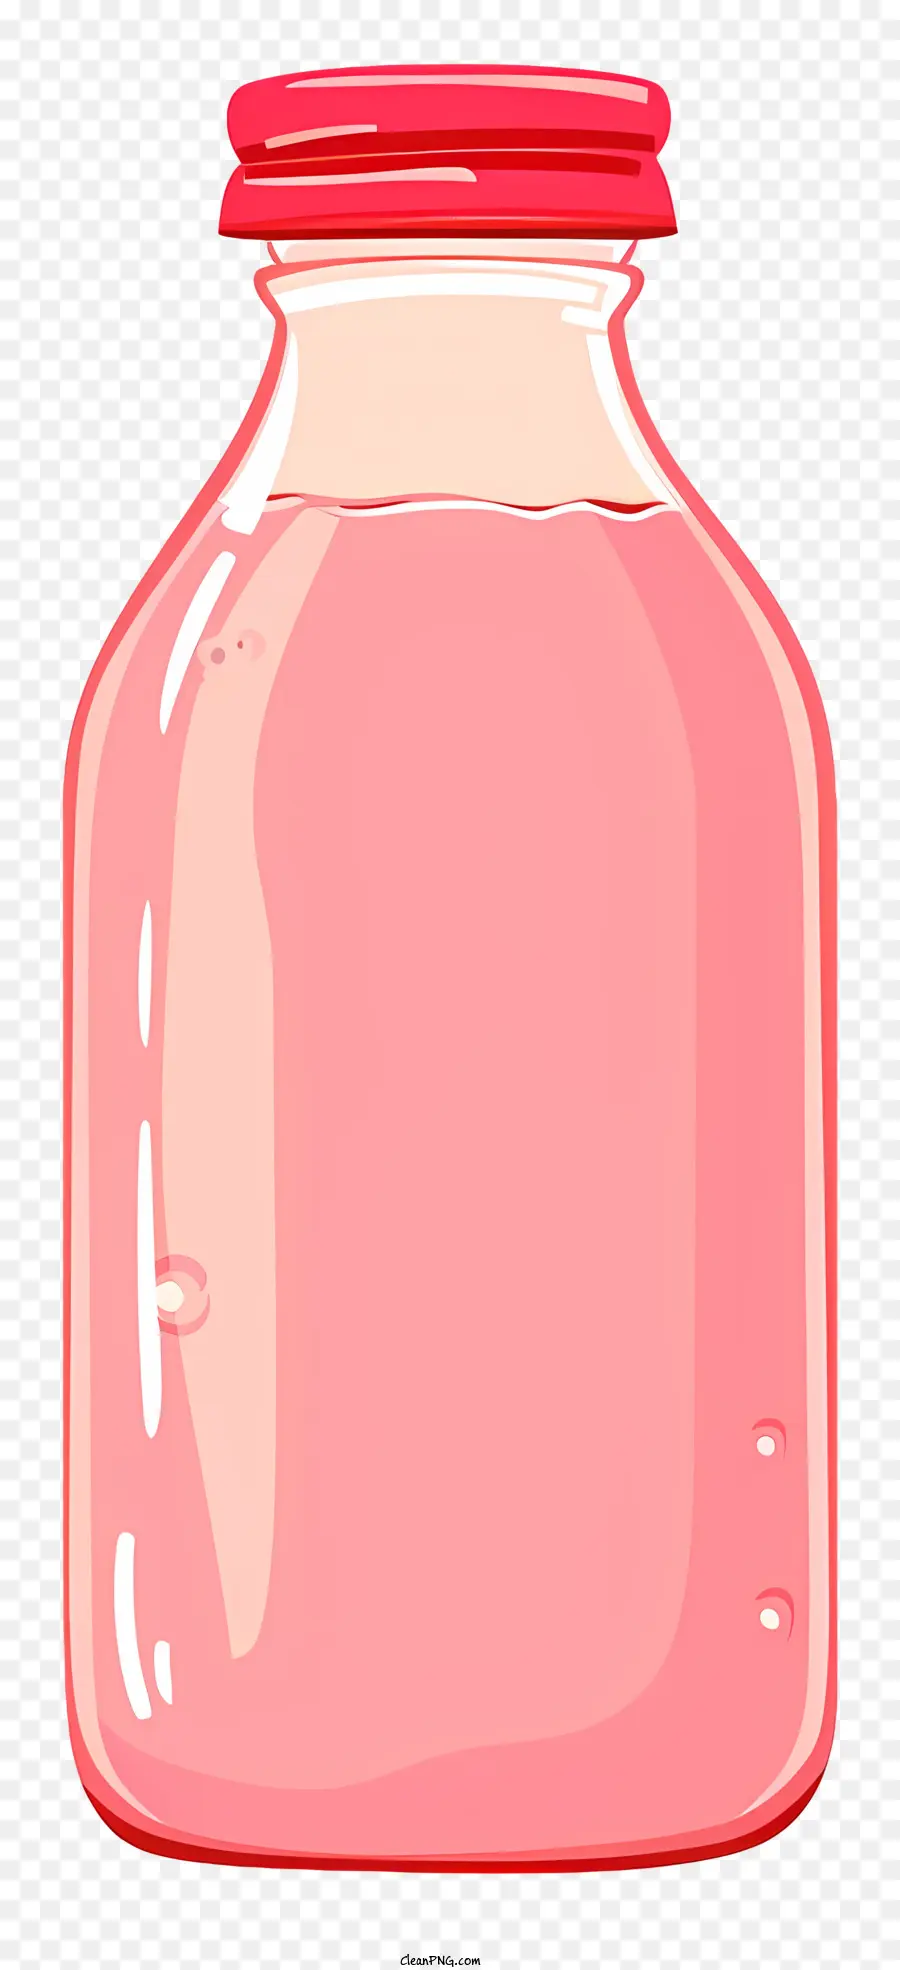 Fruchtsaft - Glasflasche mit rotem Deckel, weißes Etikett, Flüssigkeit